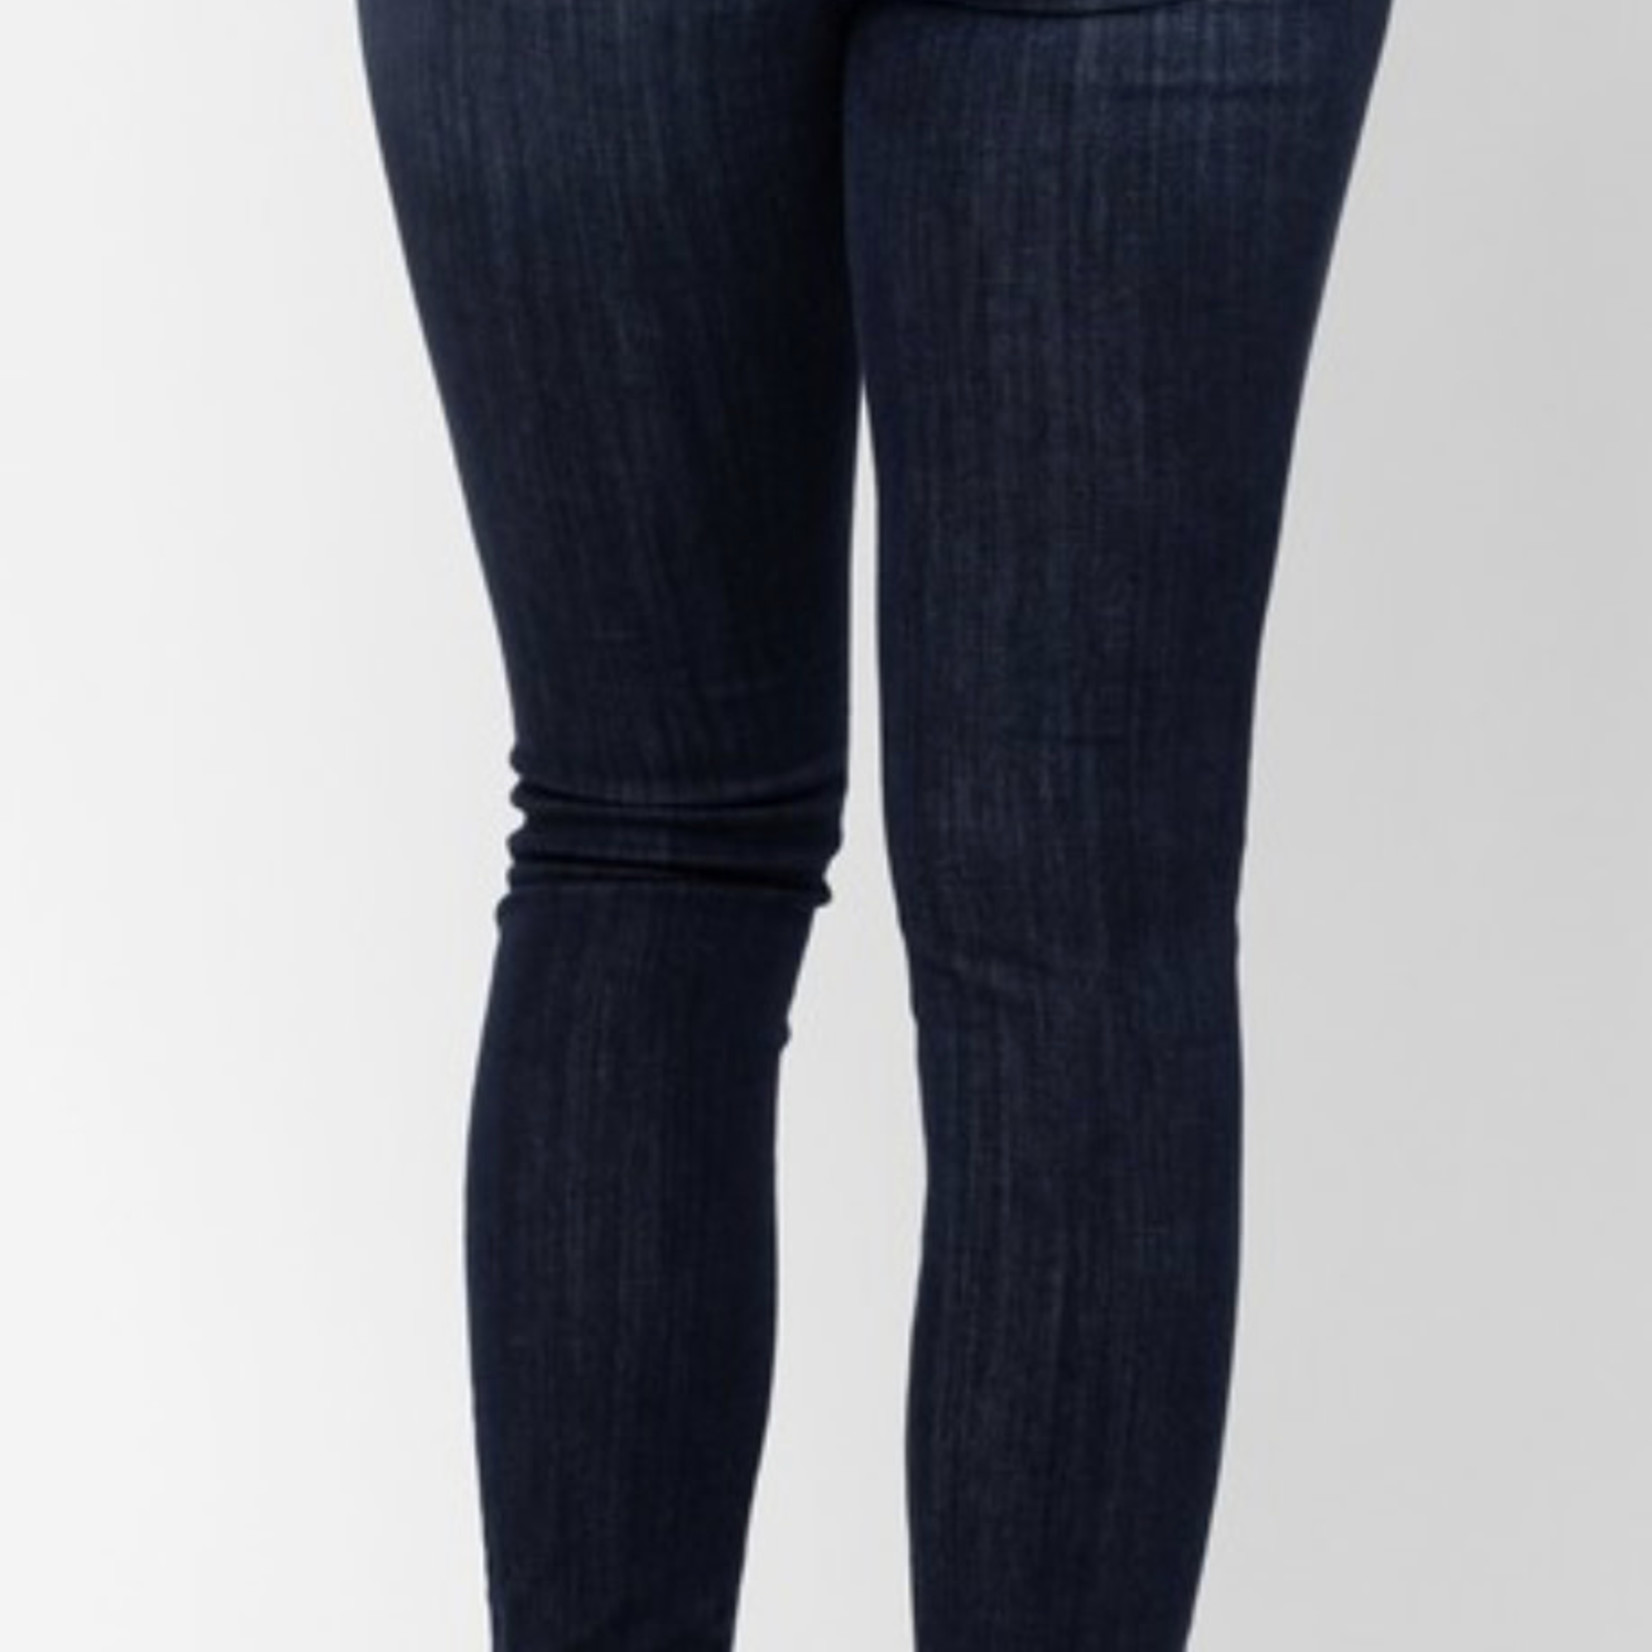 Judy Blue Skinny Dark Jeans (Tall)